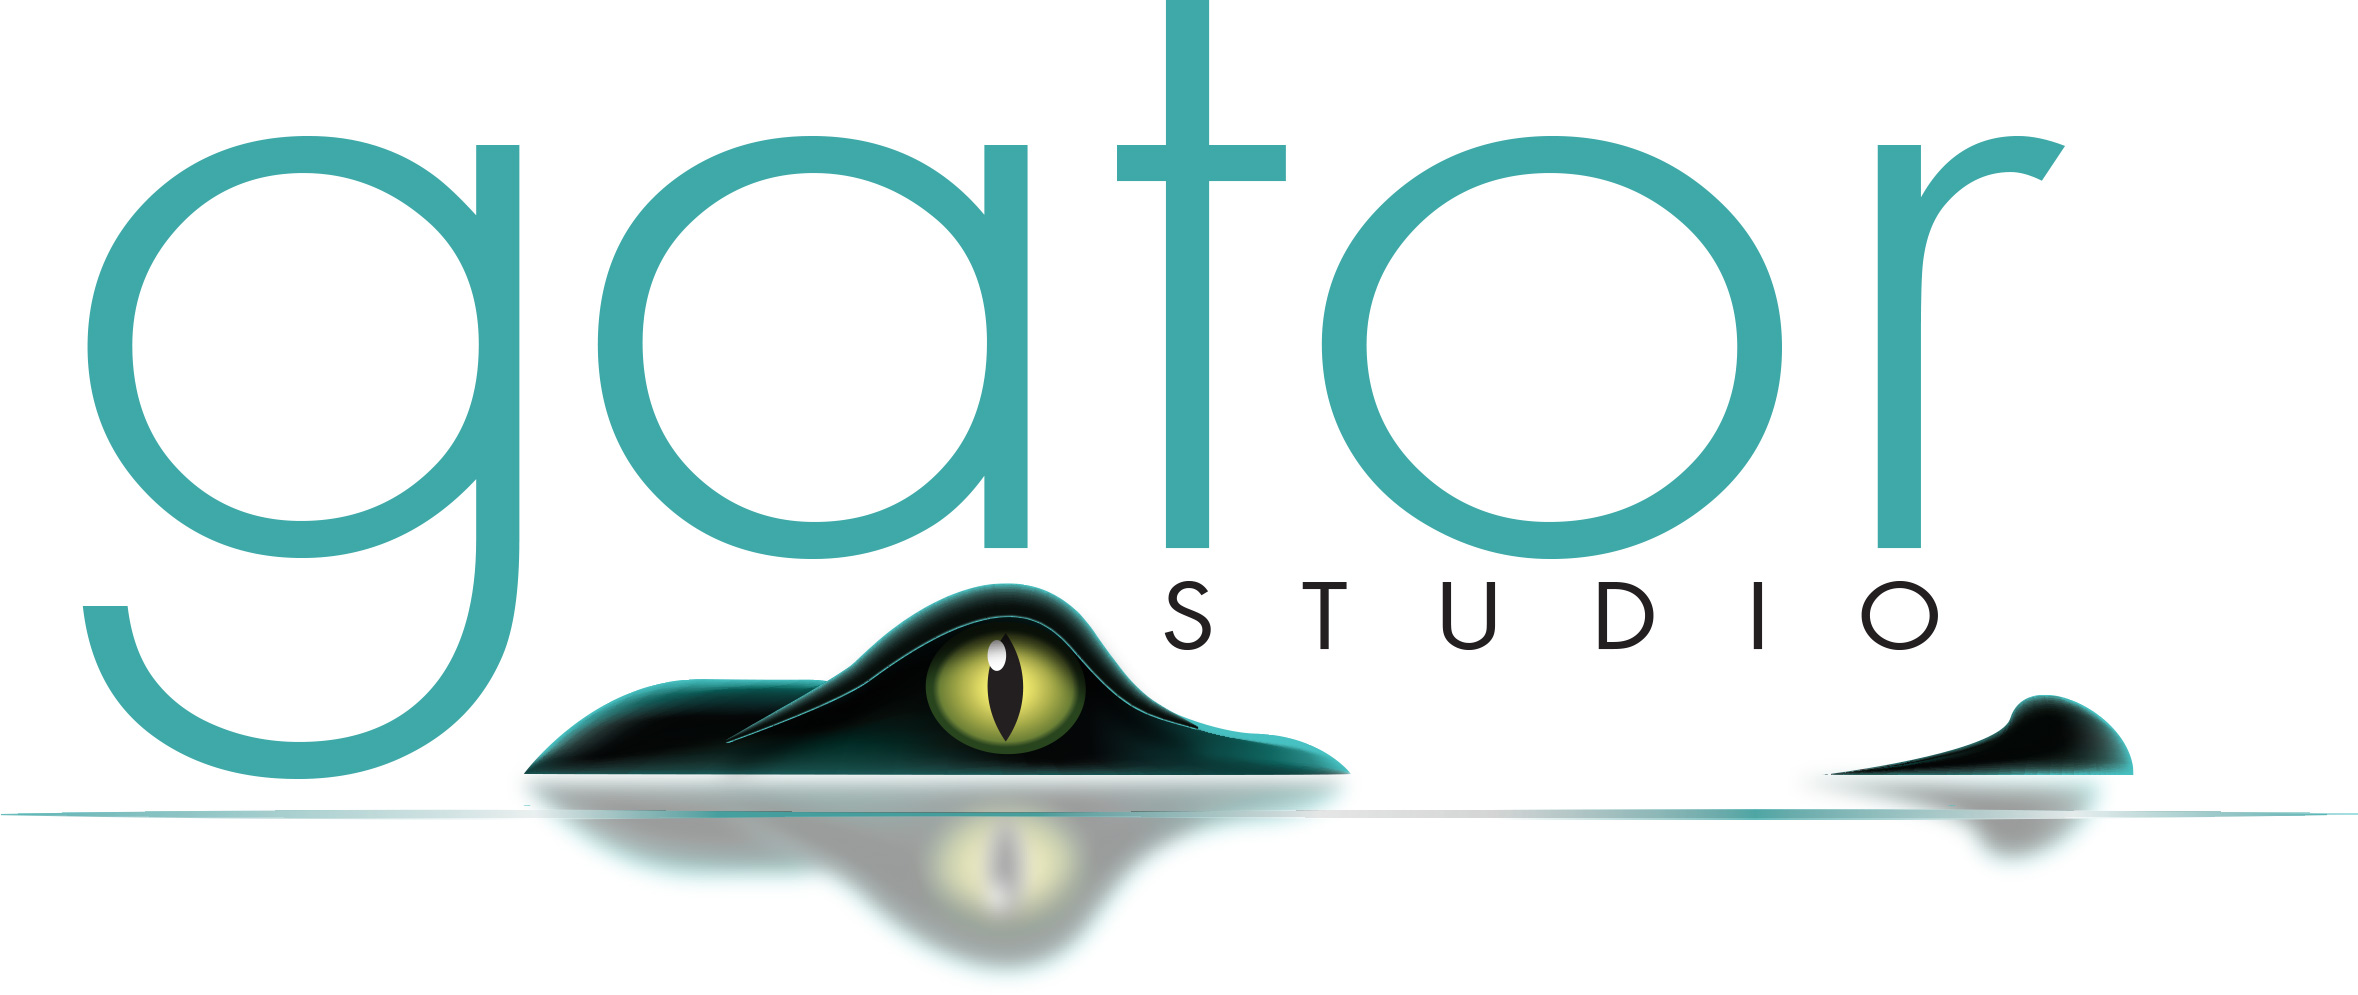 Gator Studio